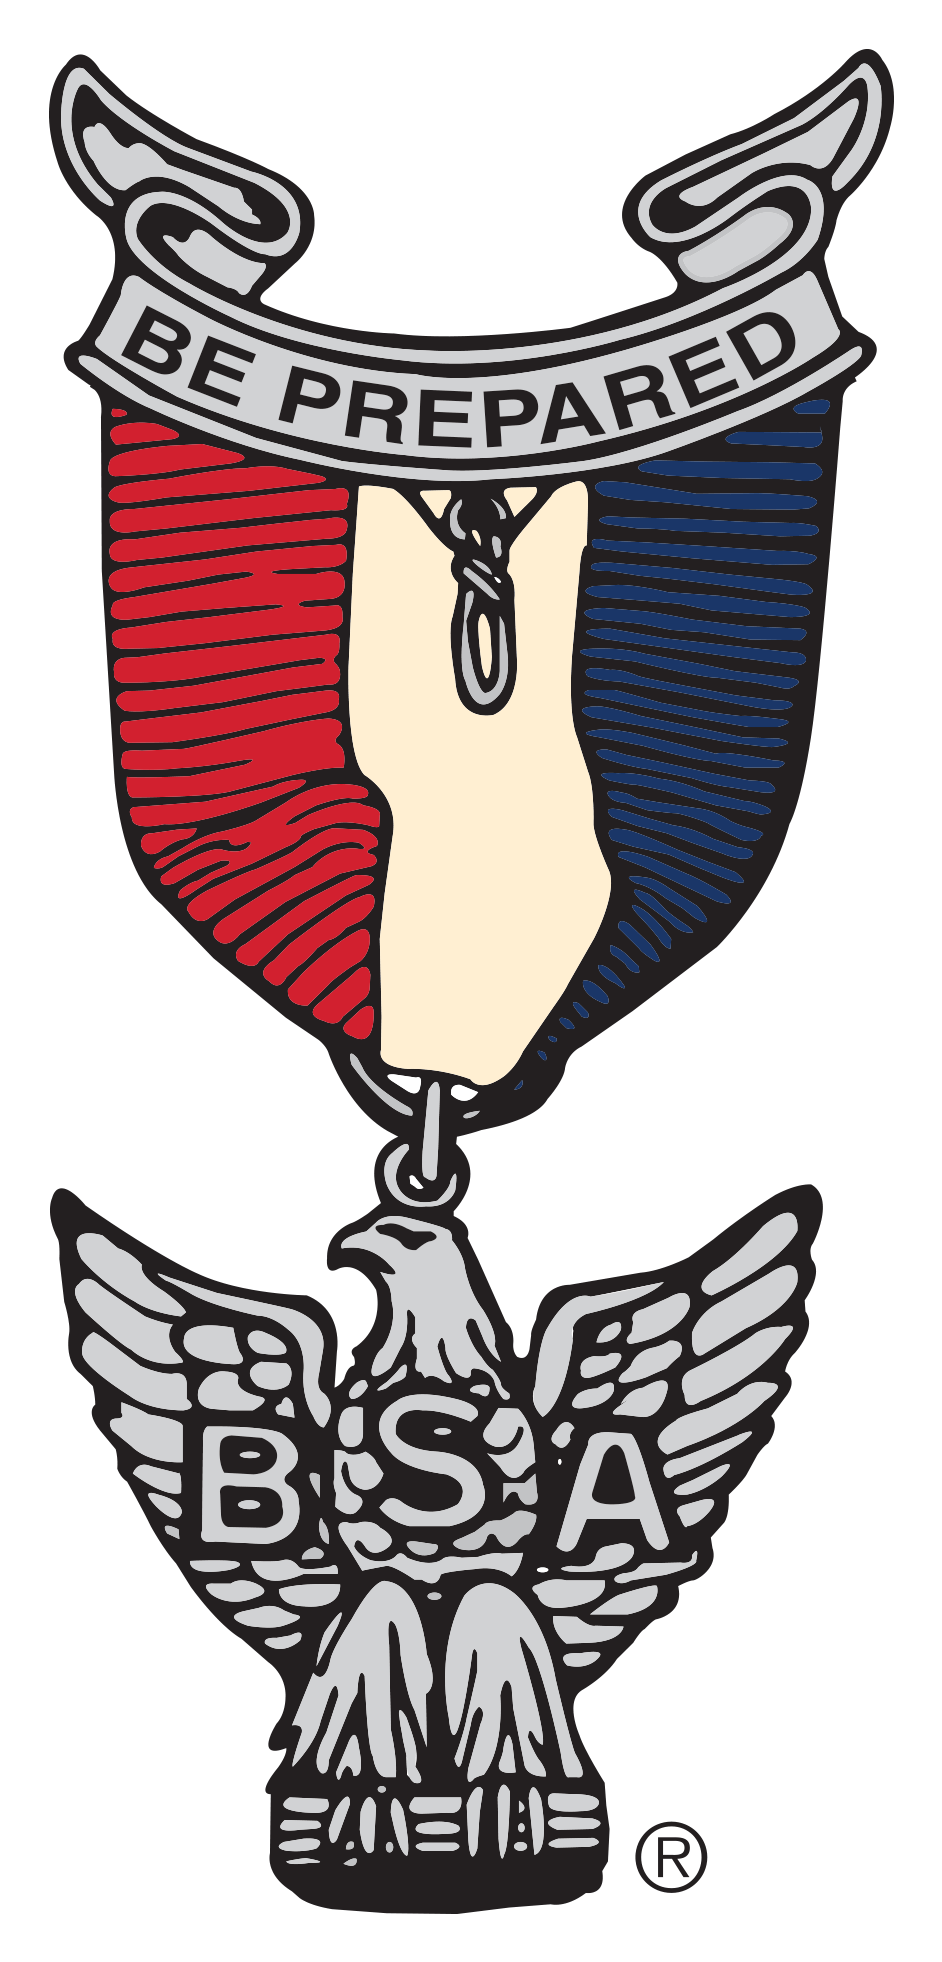 Boy Scout Eagle Award (2000x2000)